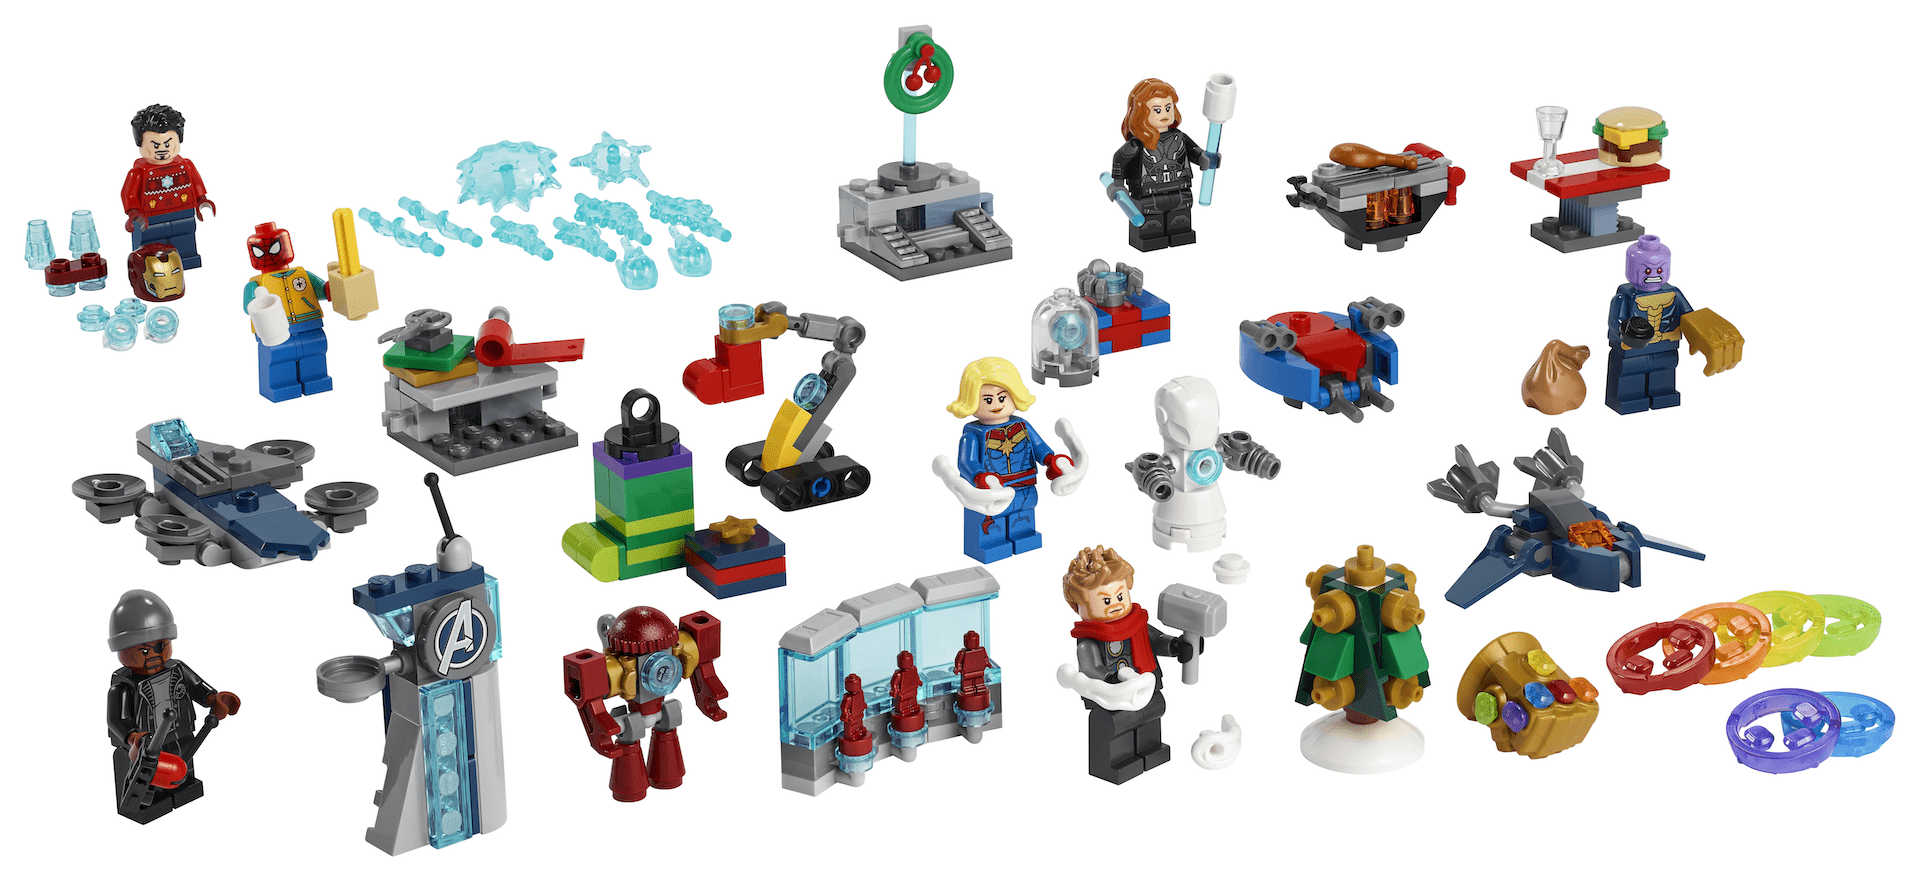 LEGO 76196 The Avengers Advent Calendar (Новогодний календарь. Мстители)